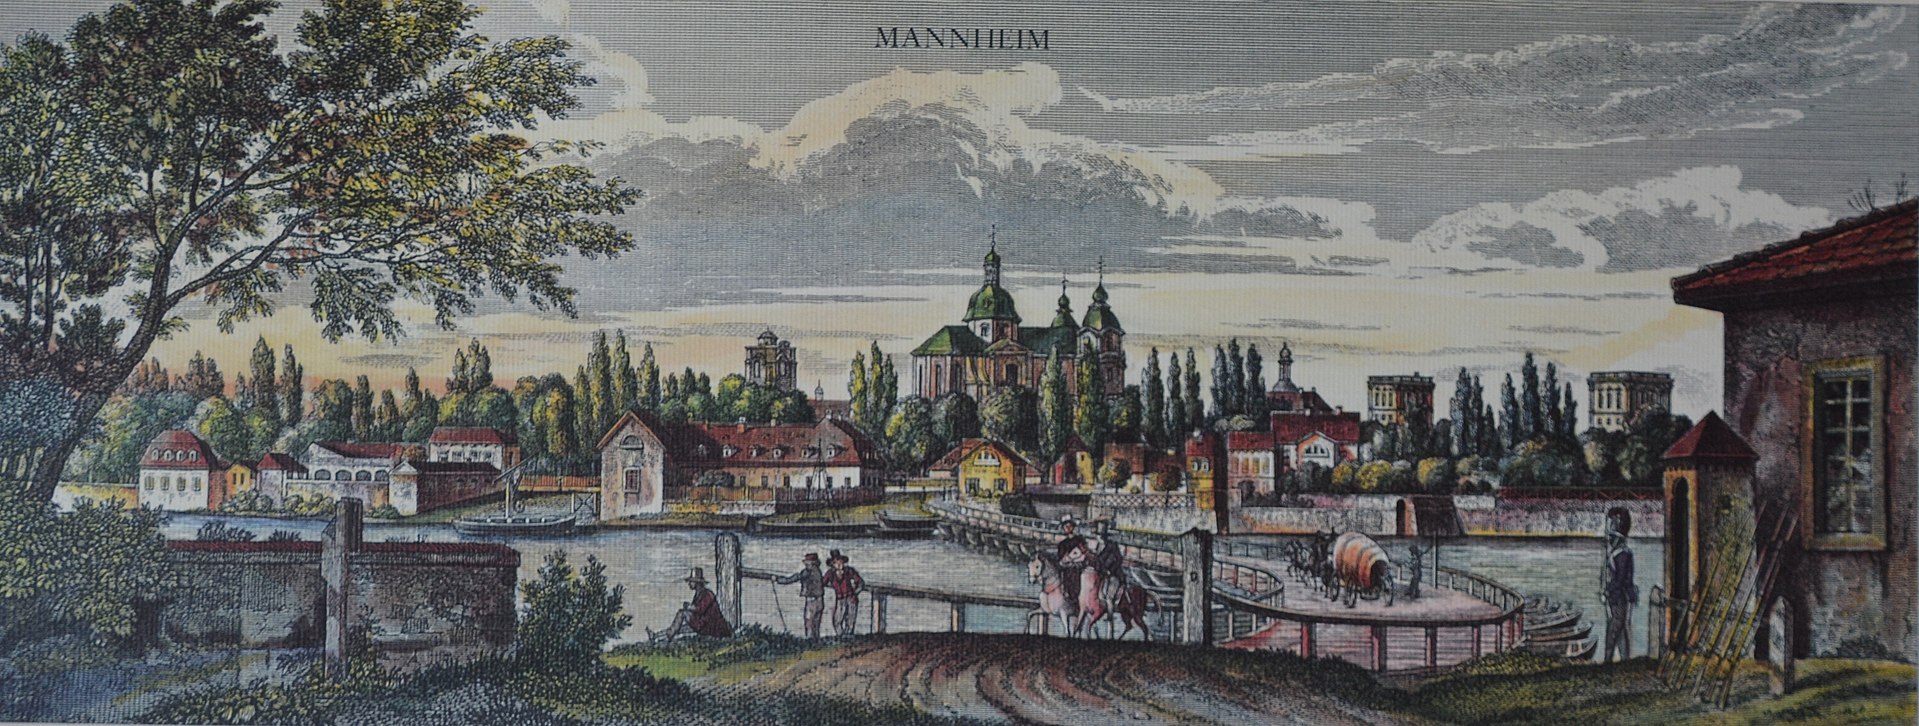 Mannheim 1846.jpg